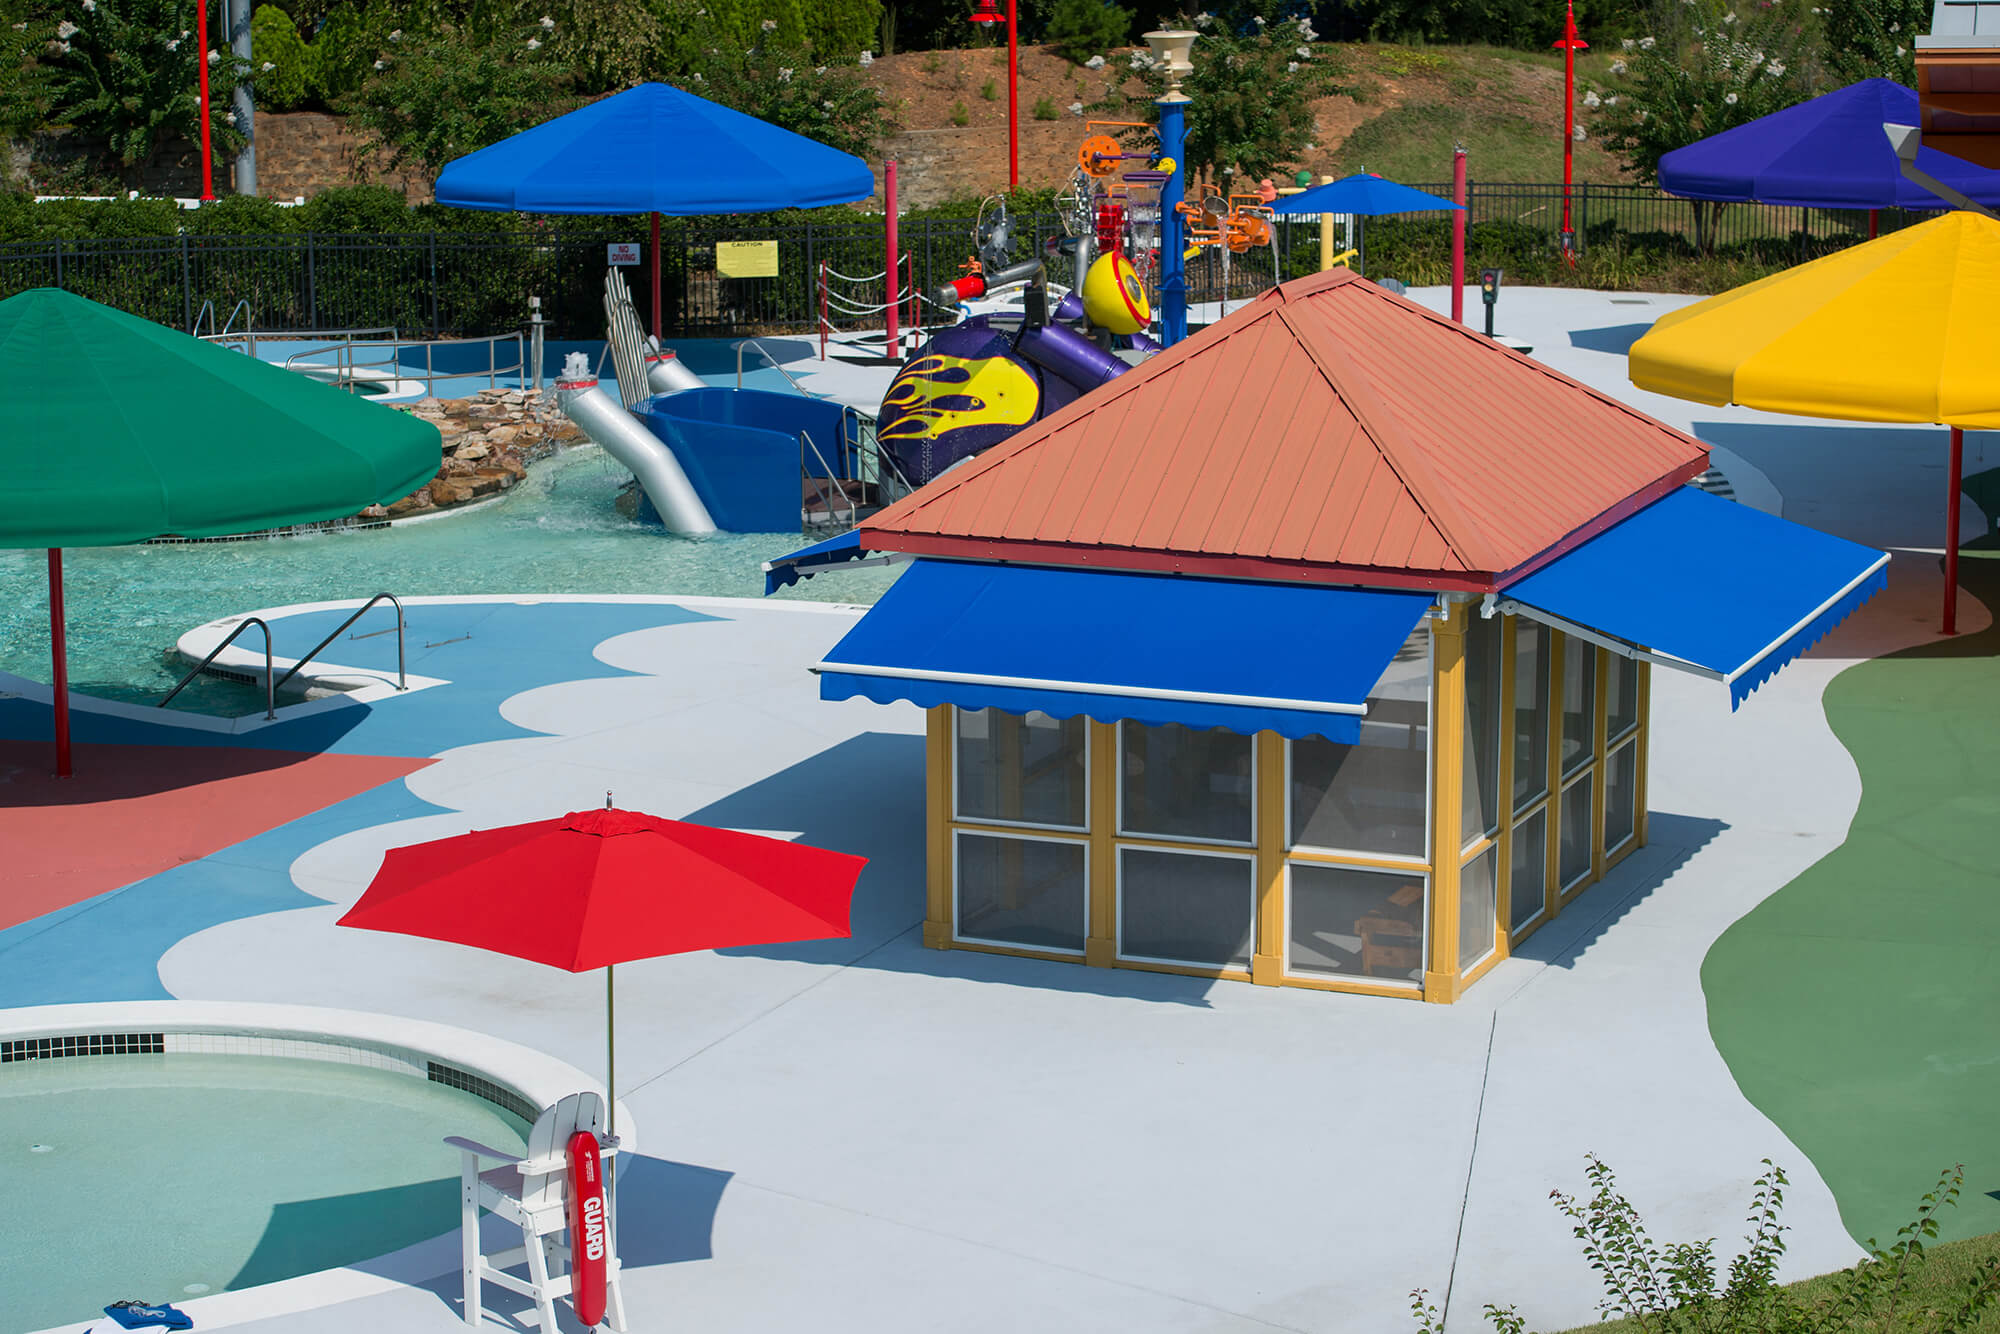 Un parco acquatico offre ombra con ombrelloni dai colori chiari e tende retrattitli di un blu audace